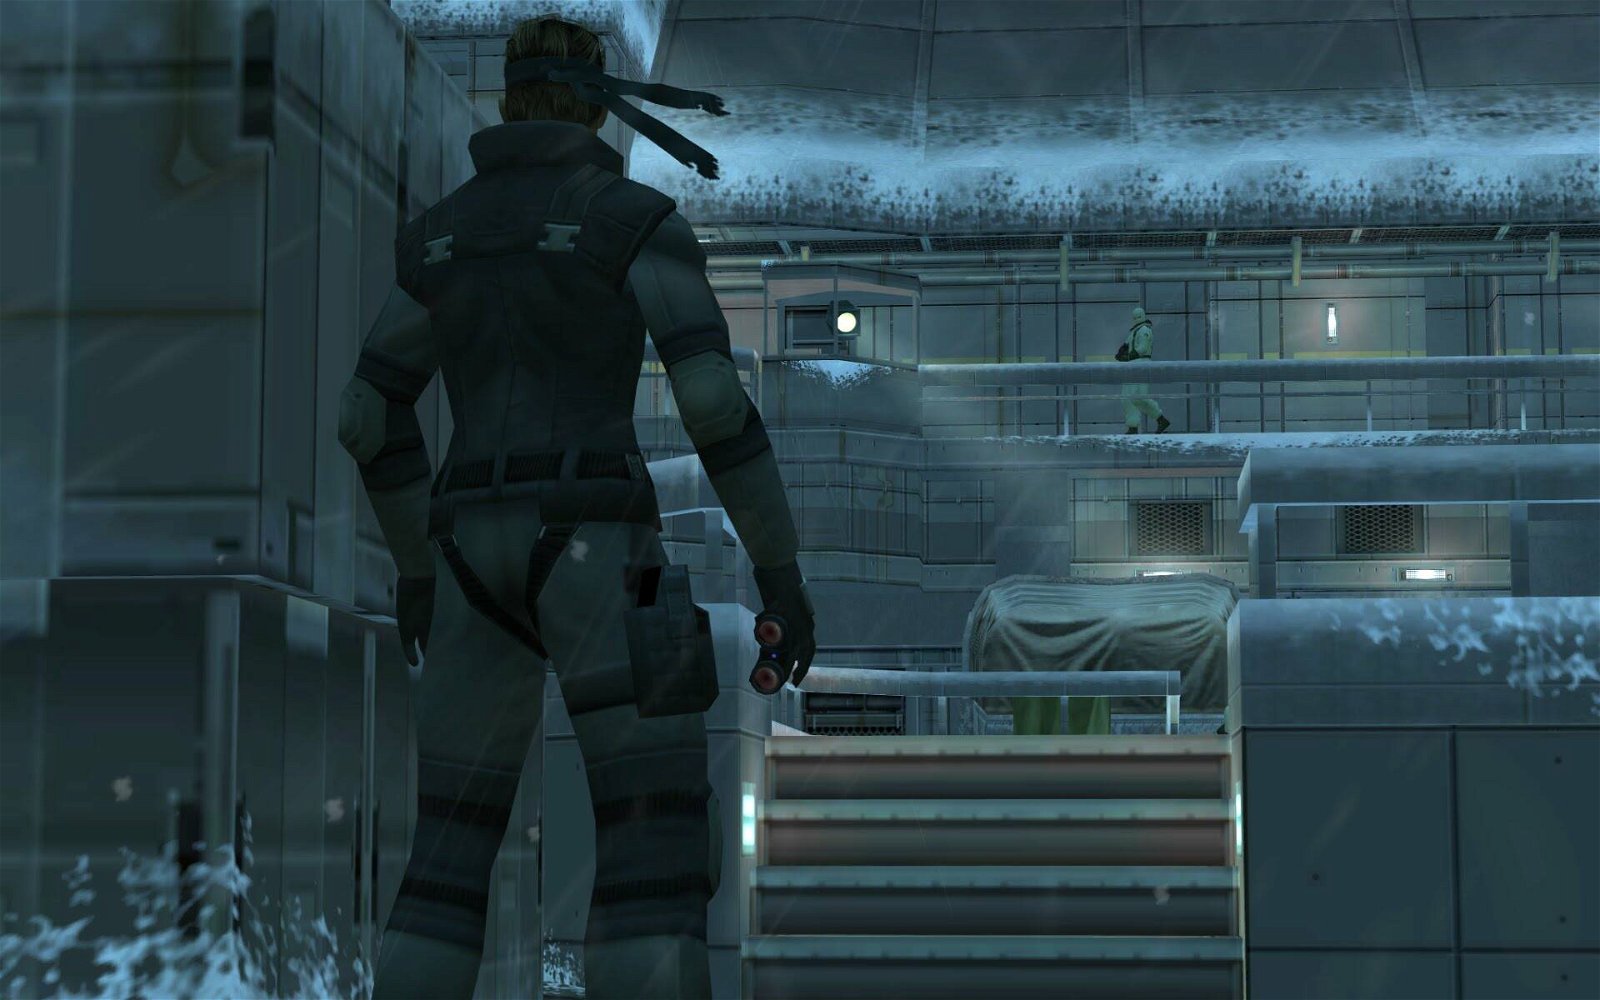 Metal Gear Solid, da dove arrivano le guardie quando scatta l'allerta?